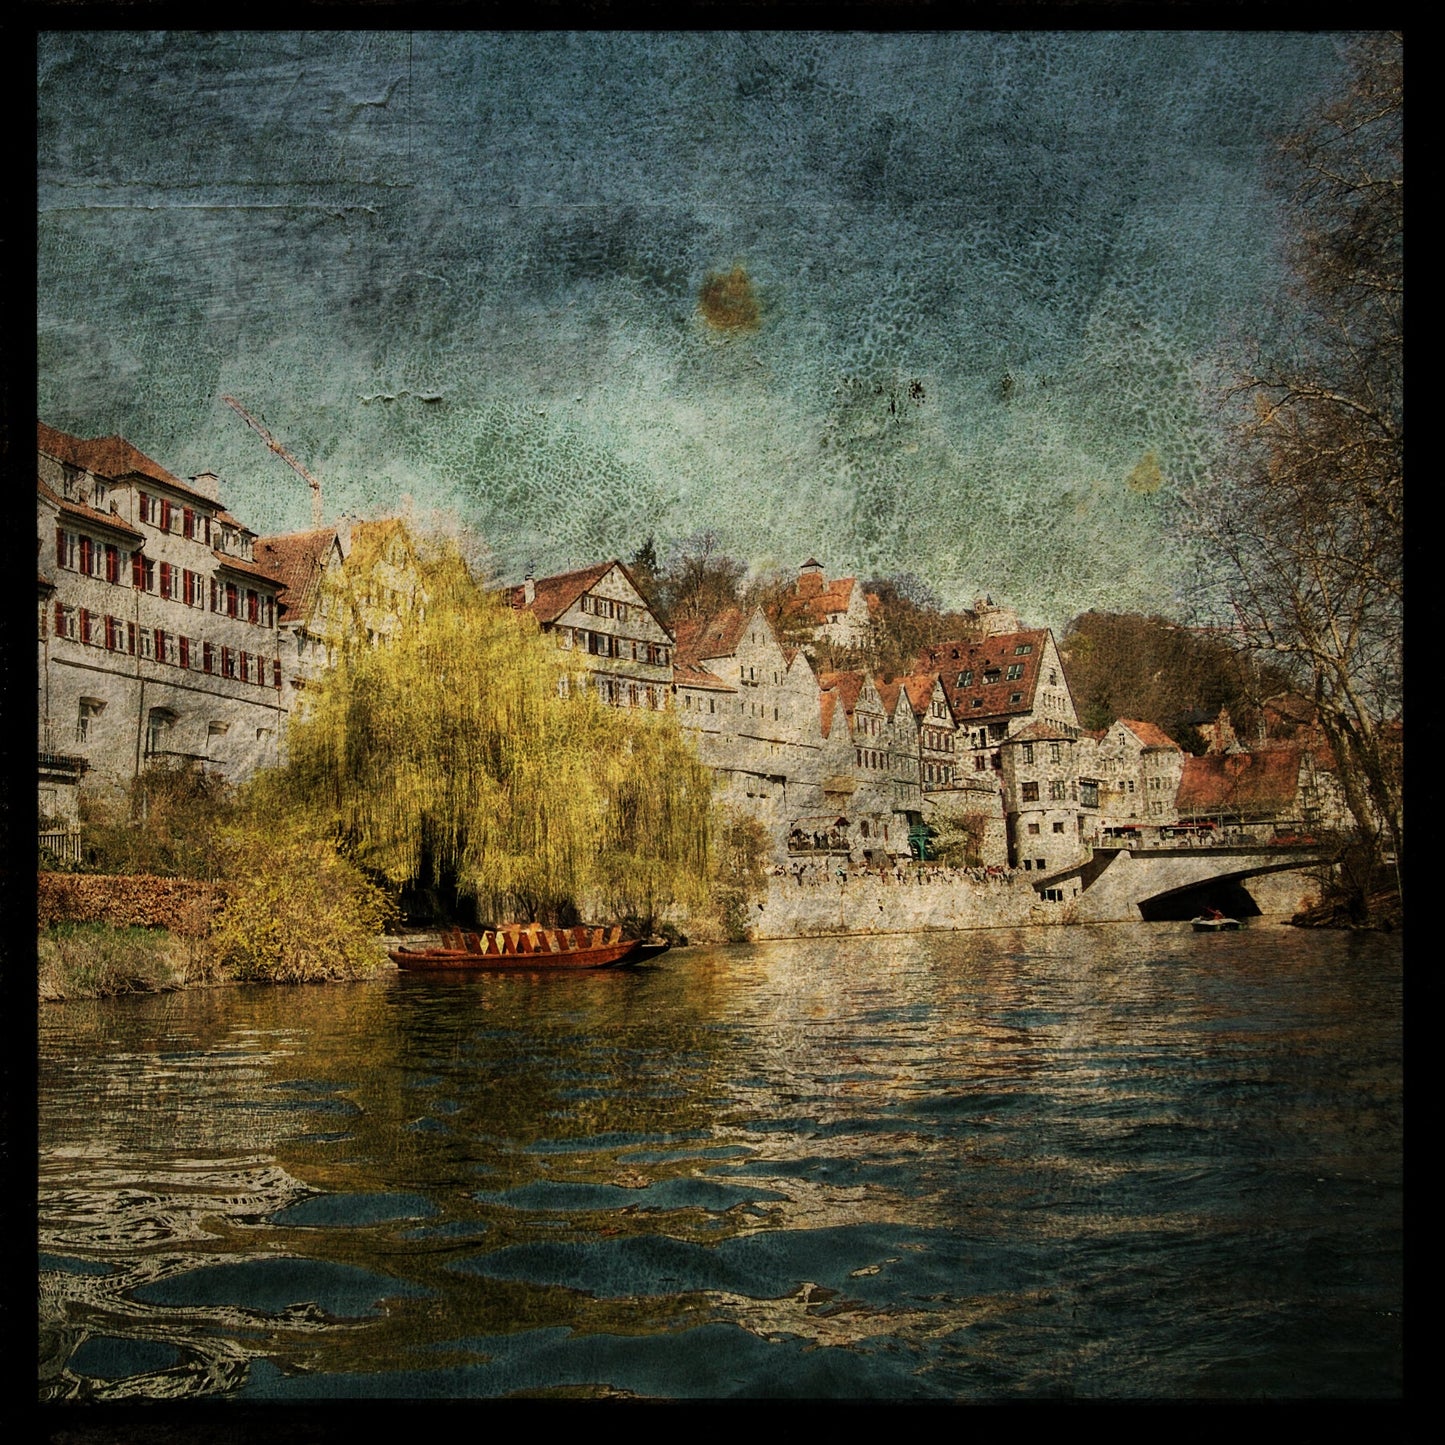 Neckar River No. 2 Photograph